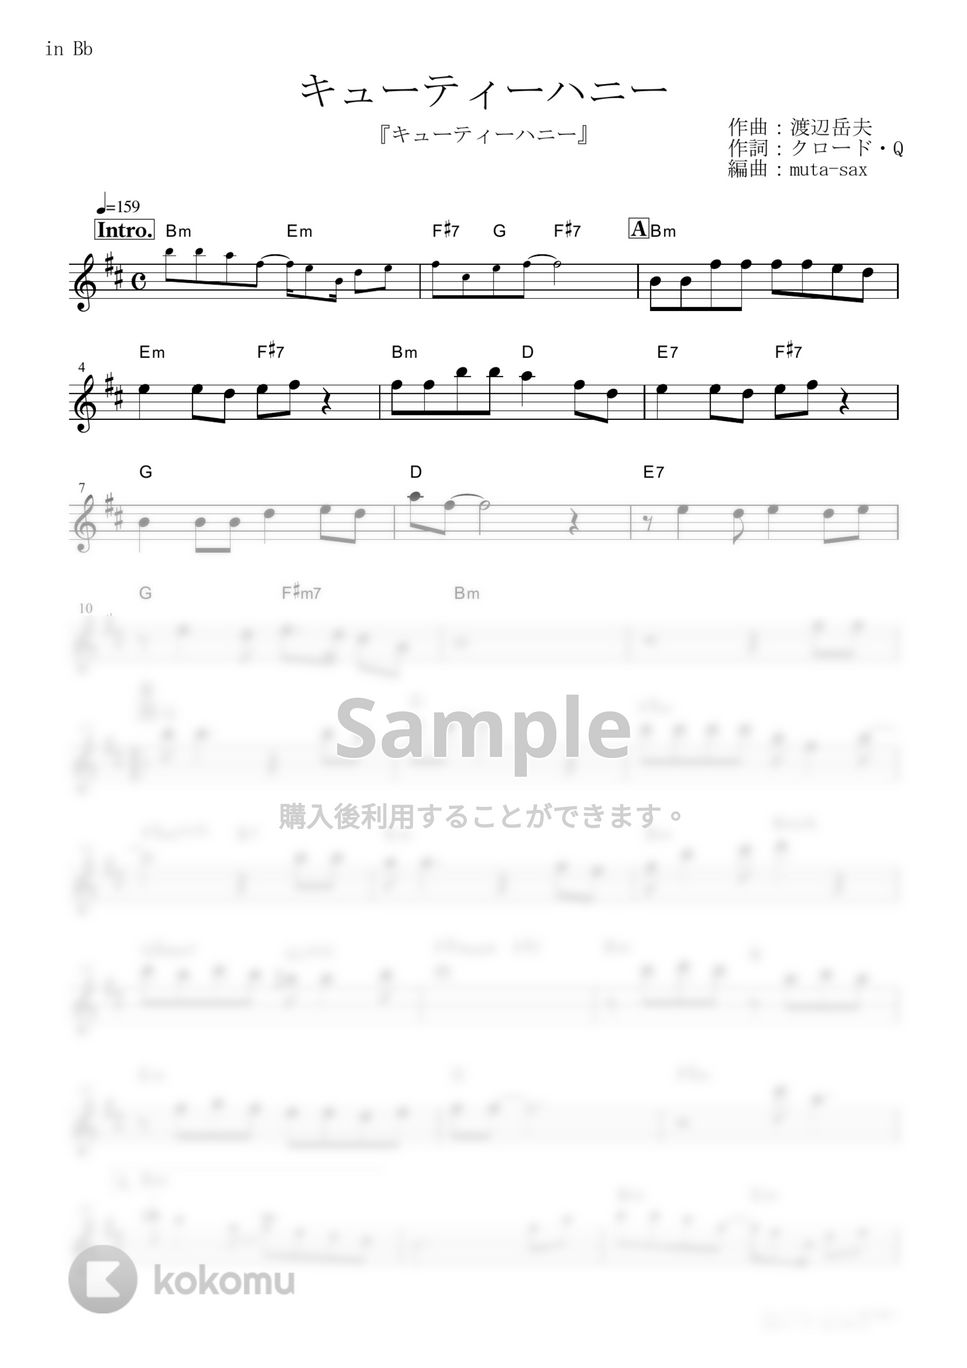 前川陽子 - キューティーハニー (『キューティーハニー』 / in Bb) by muta-sax